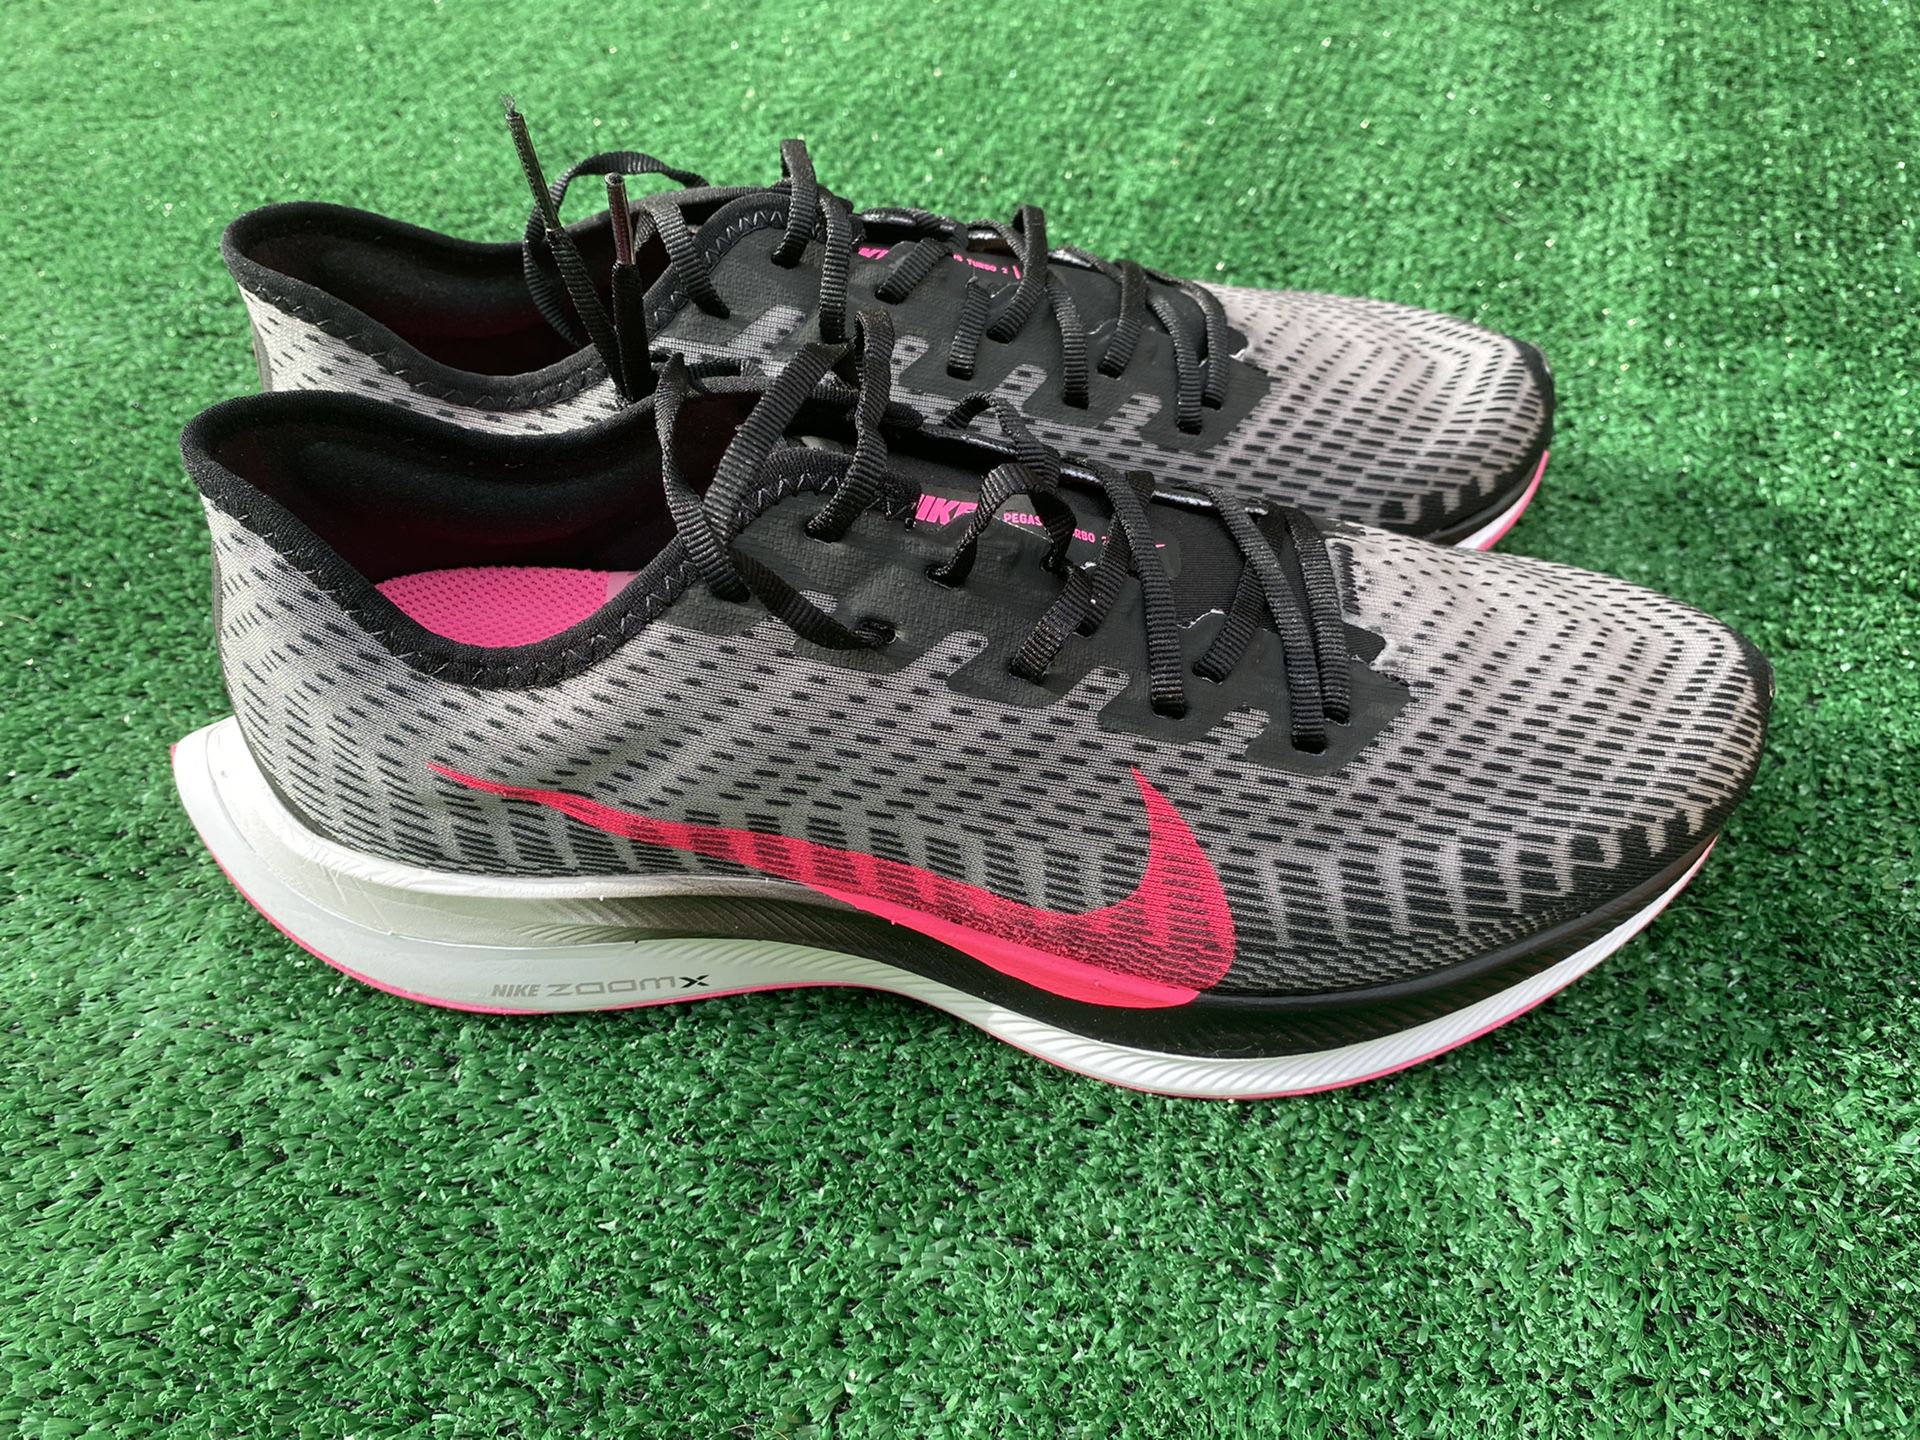 Nike Shoes Zoom Pegasus Turbo 2 Men's Running Shoe AT2863-007 Black/Pink Blast Sz 10.5